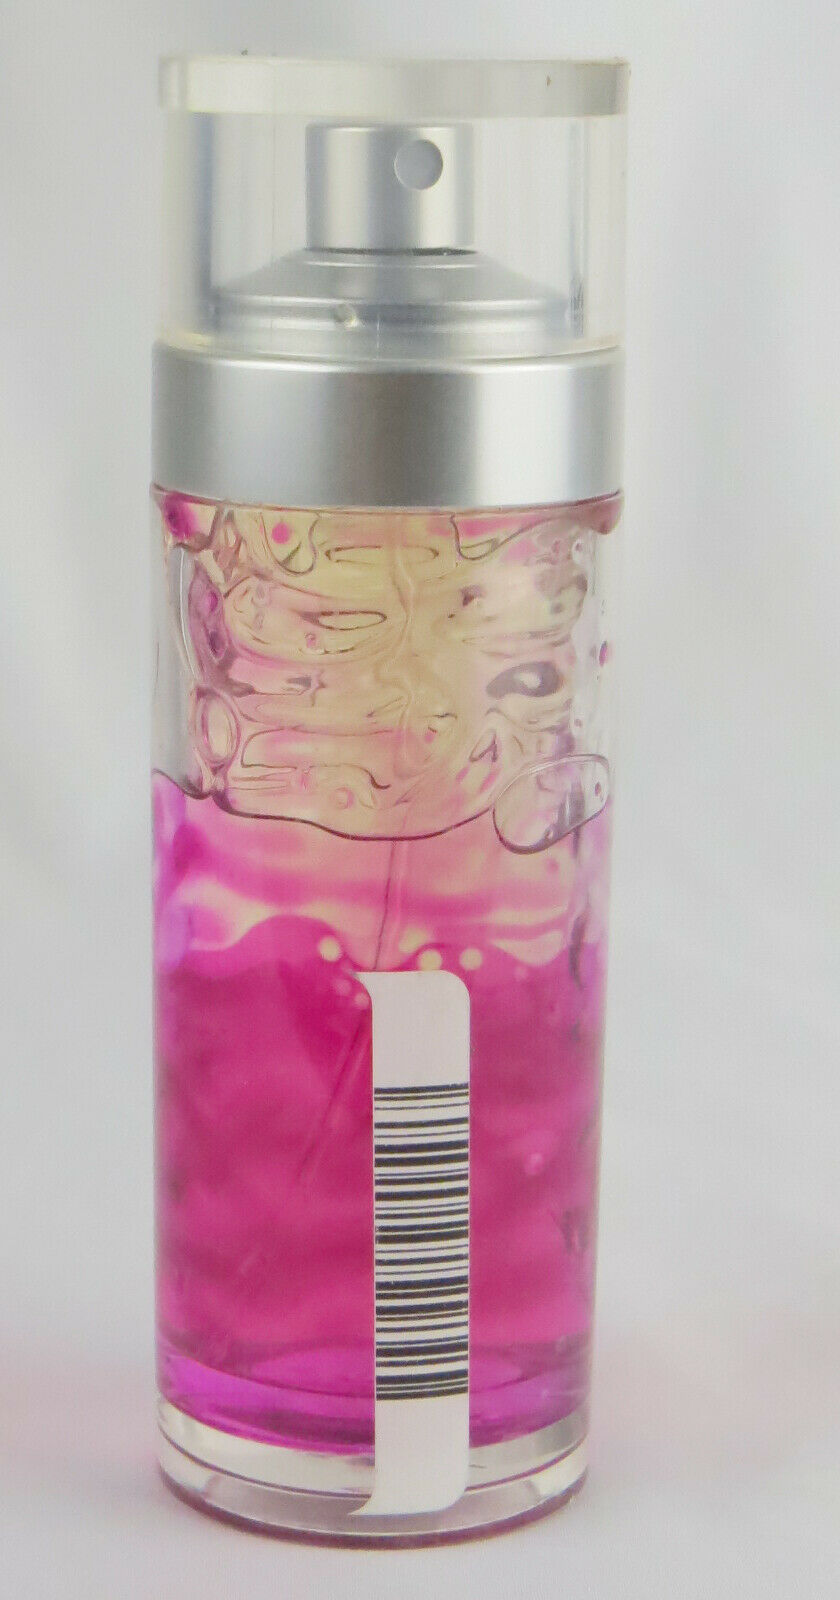 Ocean Pacific by Ocean Pacific Perfume Spray (unboxed) 1.7